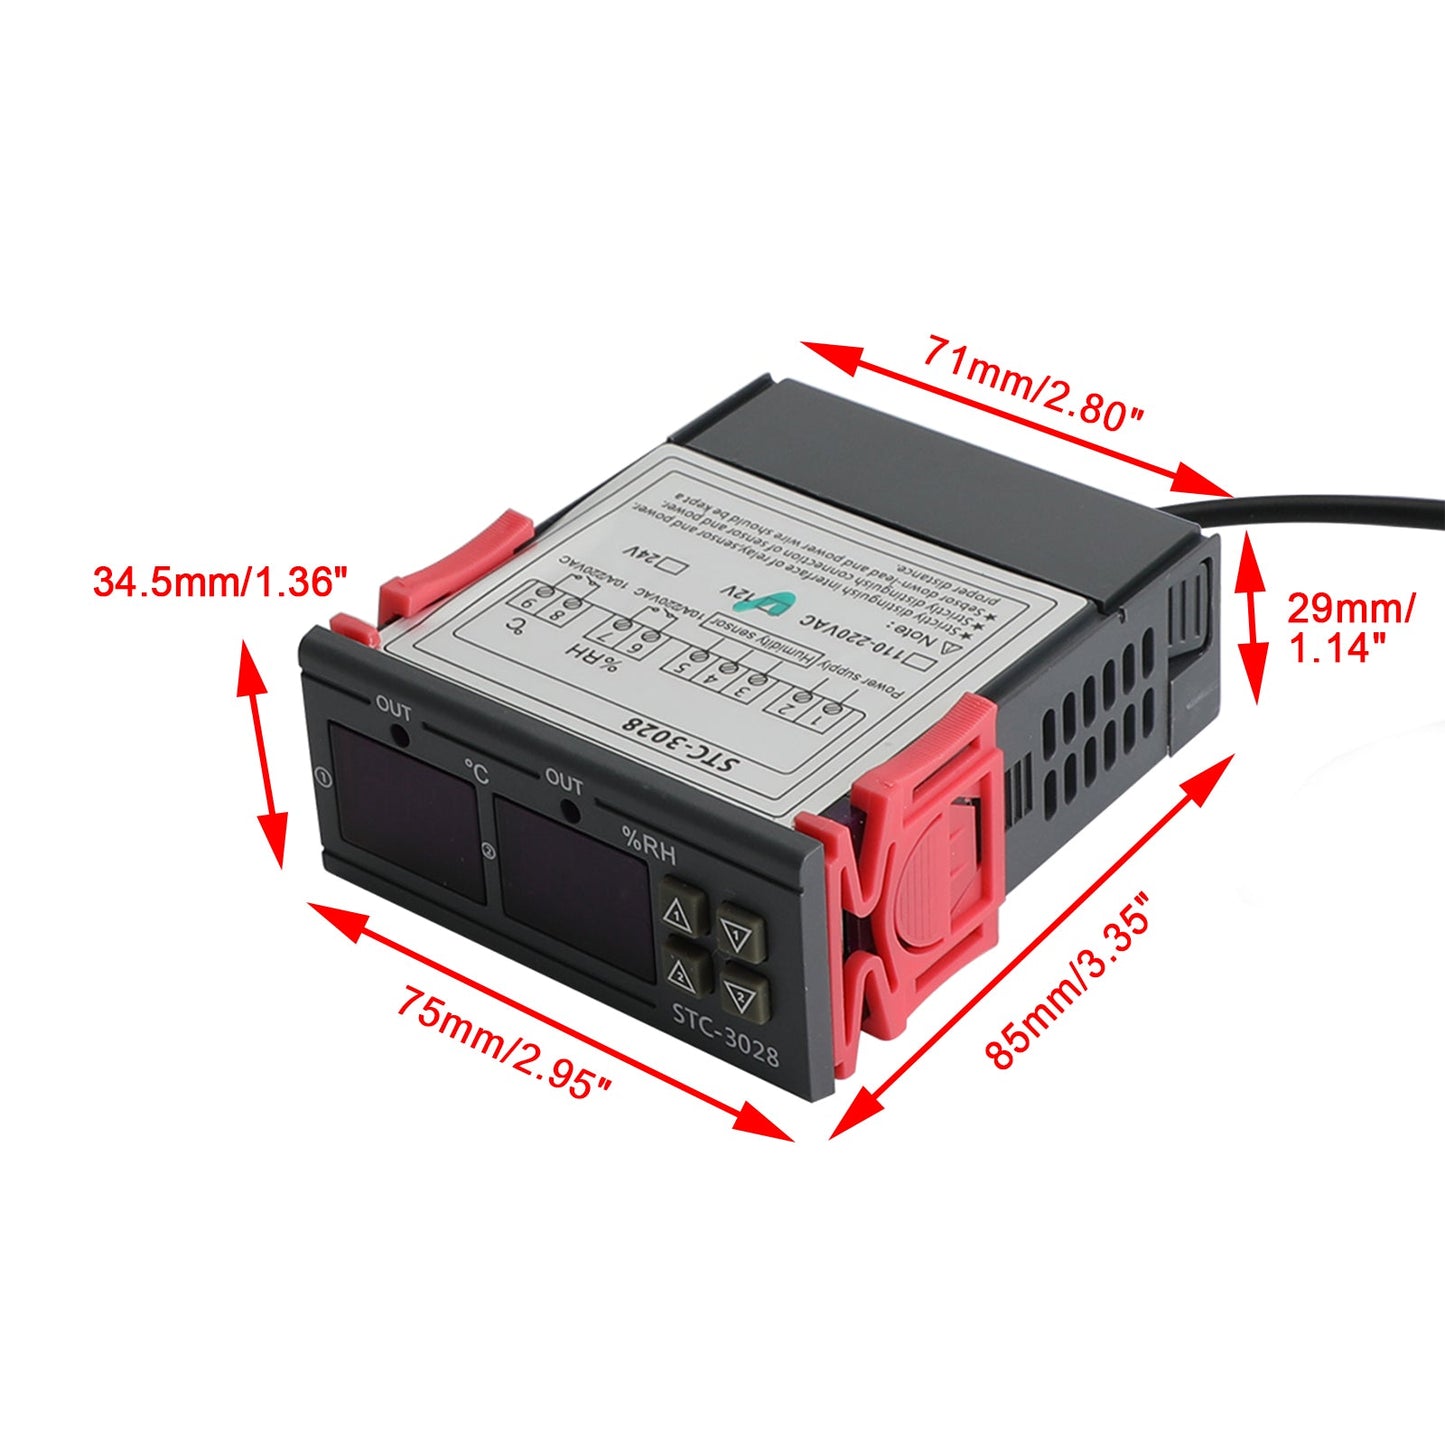 STC-3028 Digitaler Temperatur- und Luftfeuchtigkeitsregler mit zwei Displays, Thermostat + Sonde